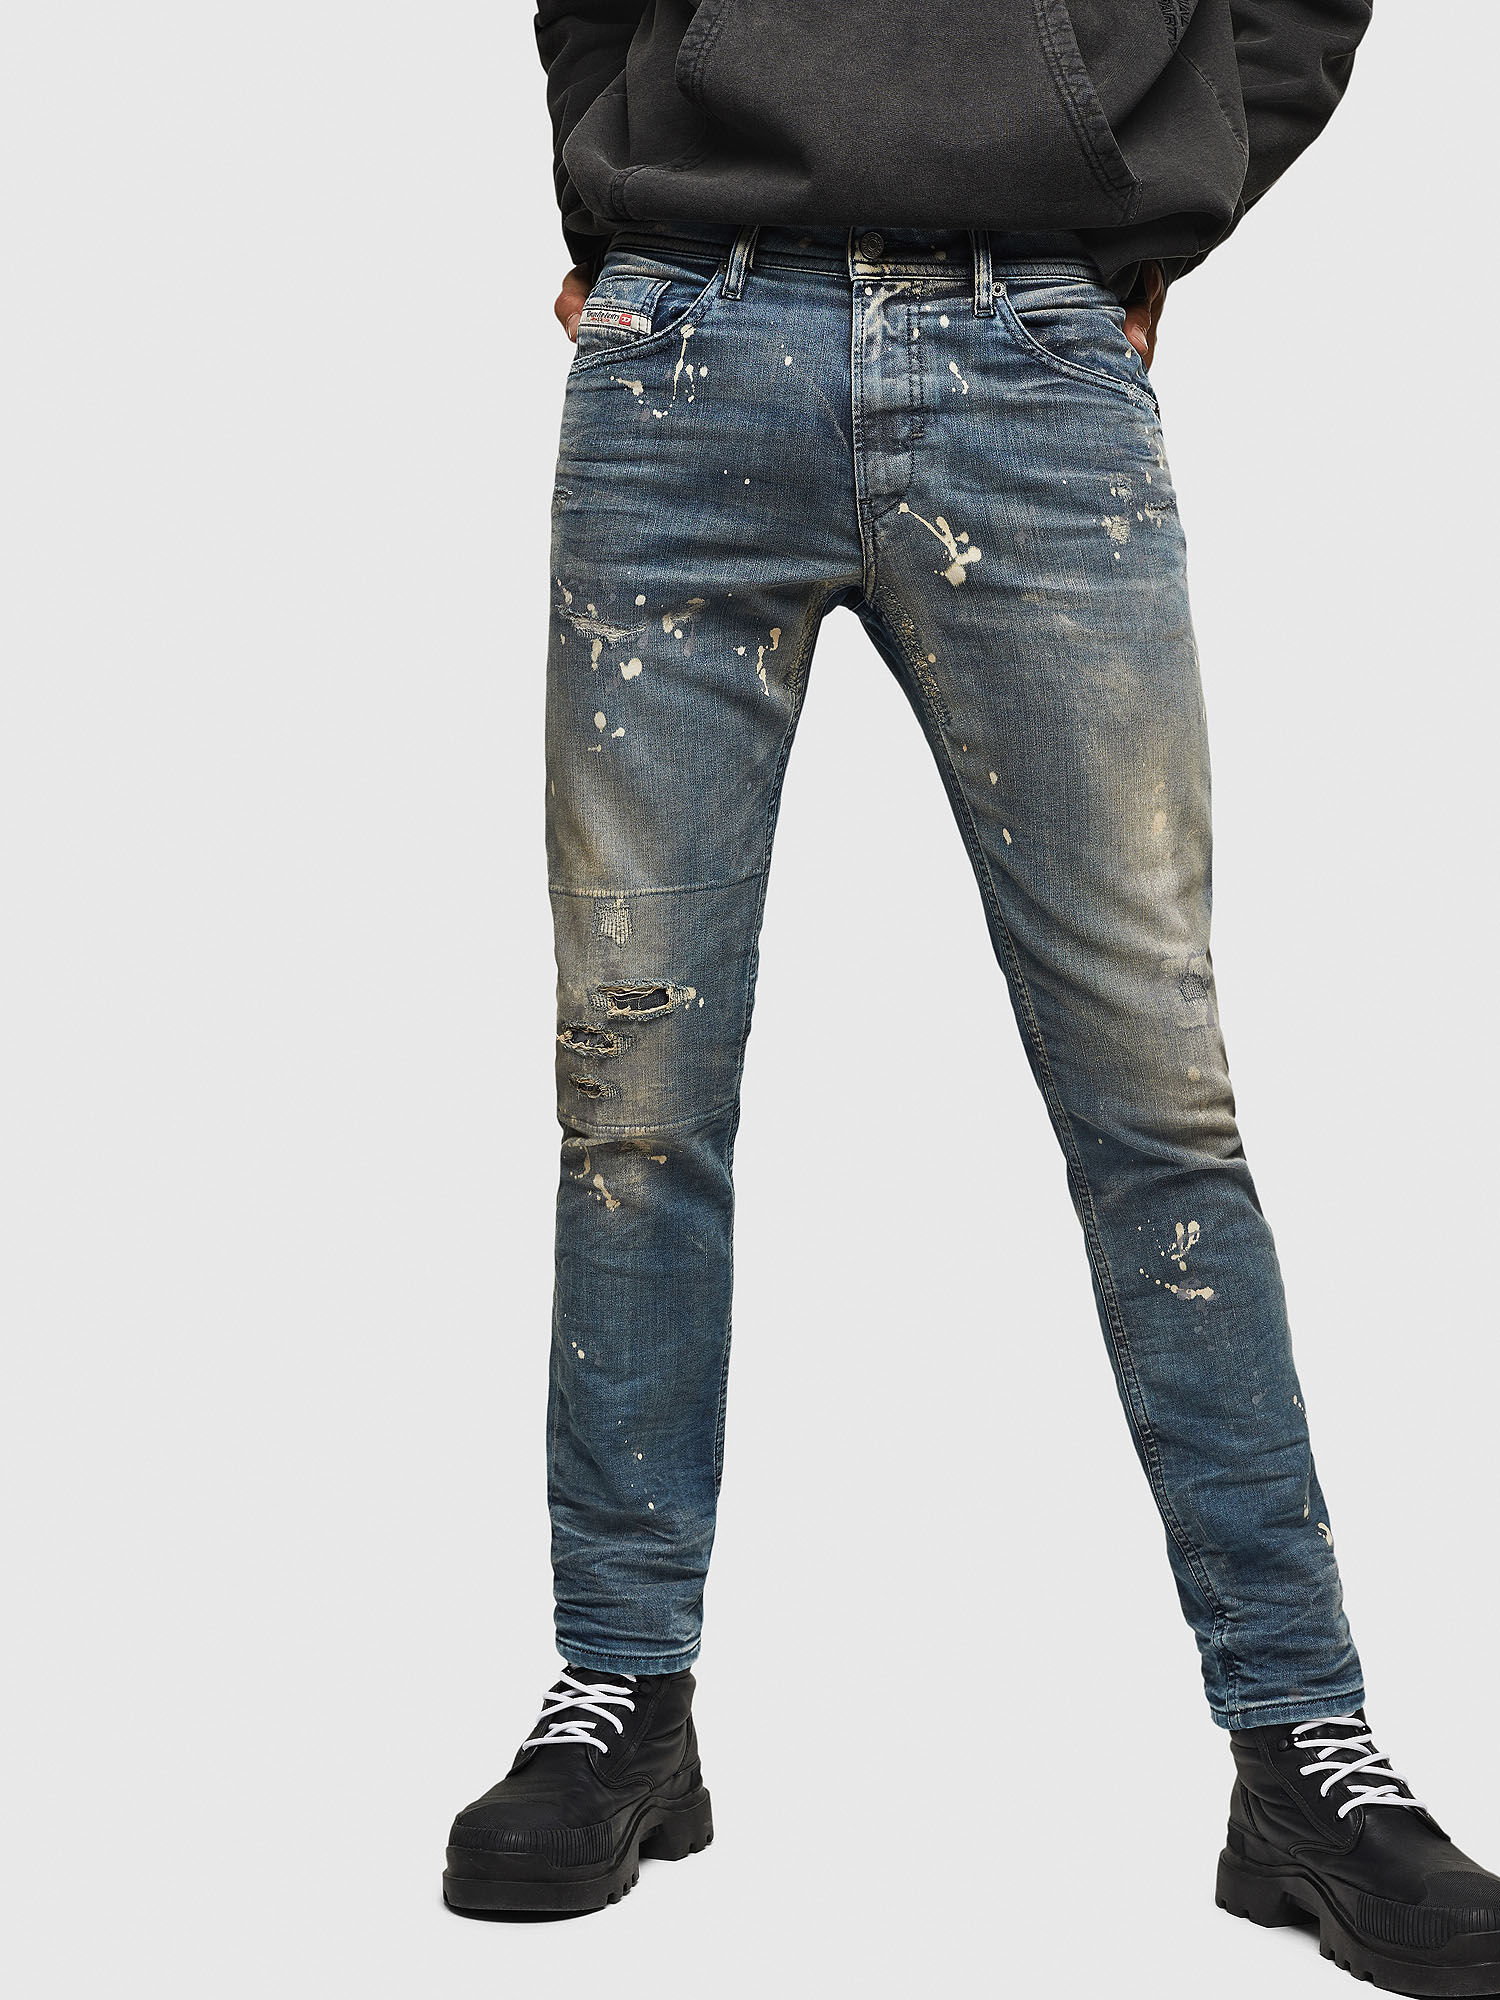 levis back zipper jeans